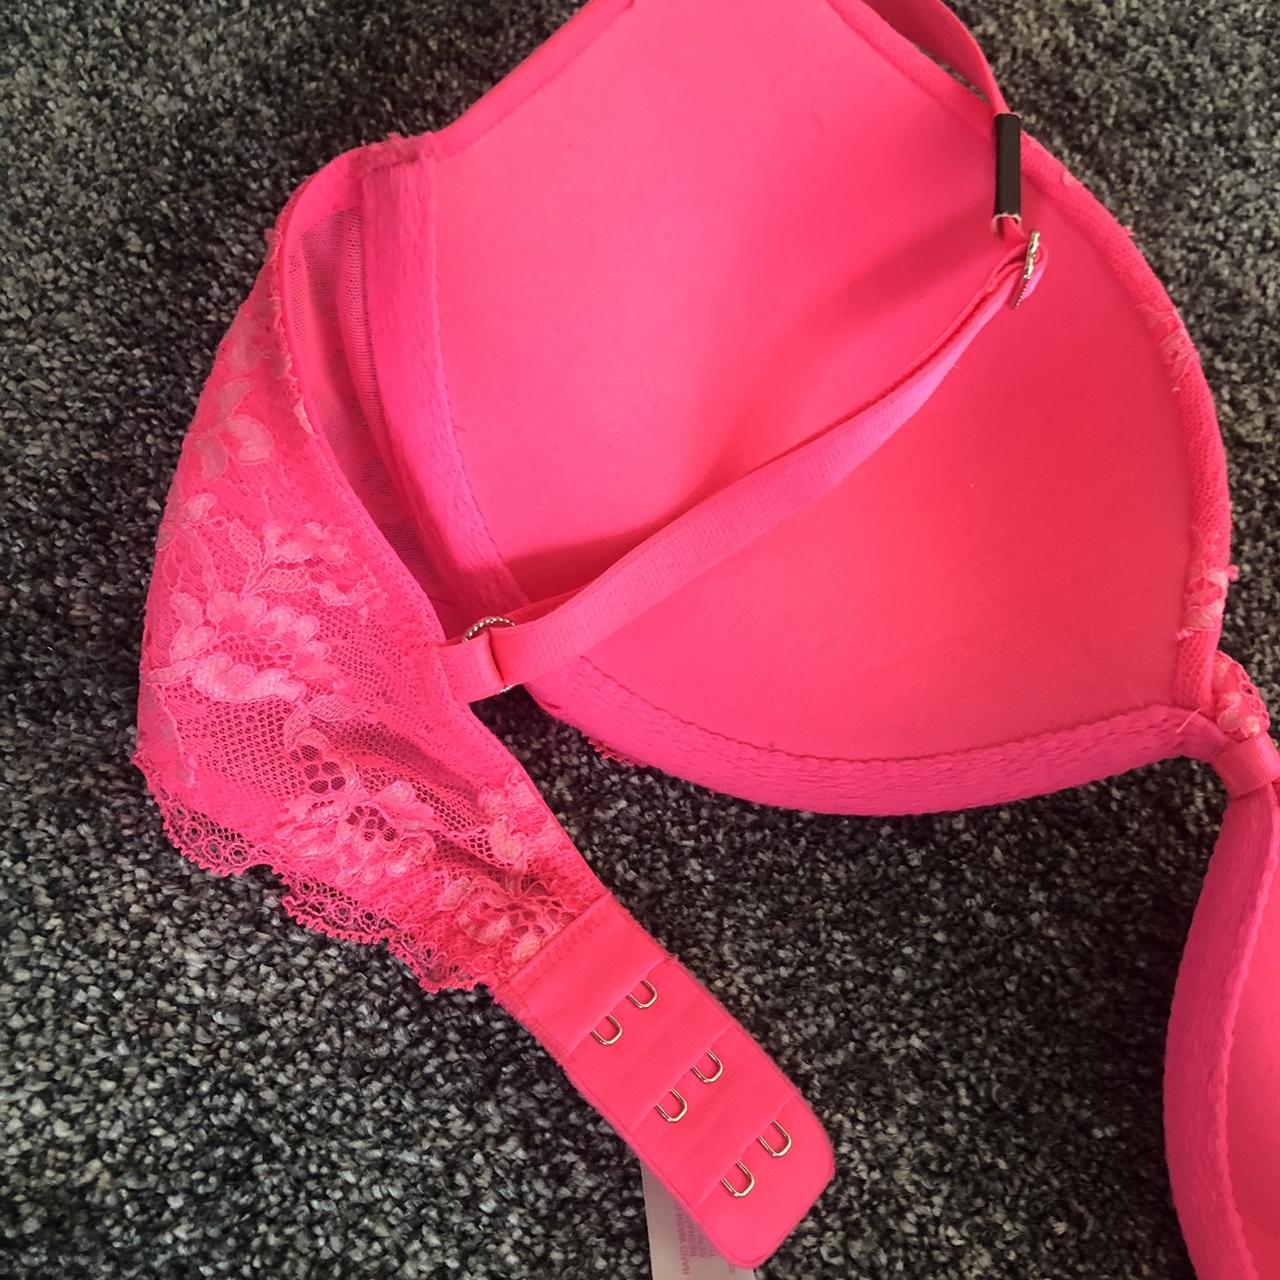 VICTORIA'S SECRET neon pink bra. Gorgeous colour and - Depop